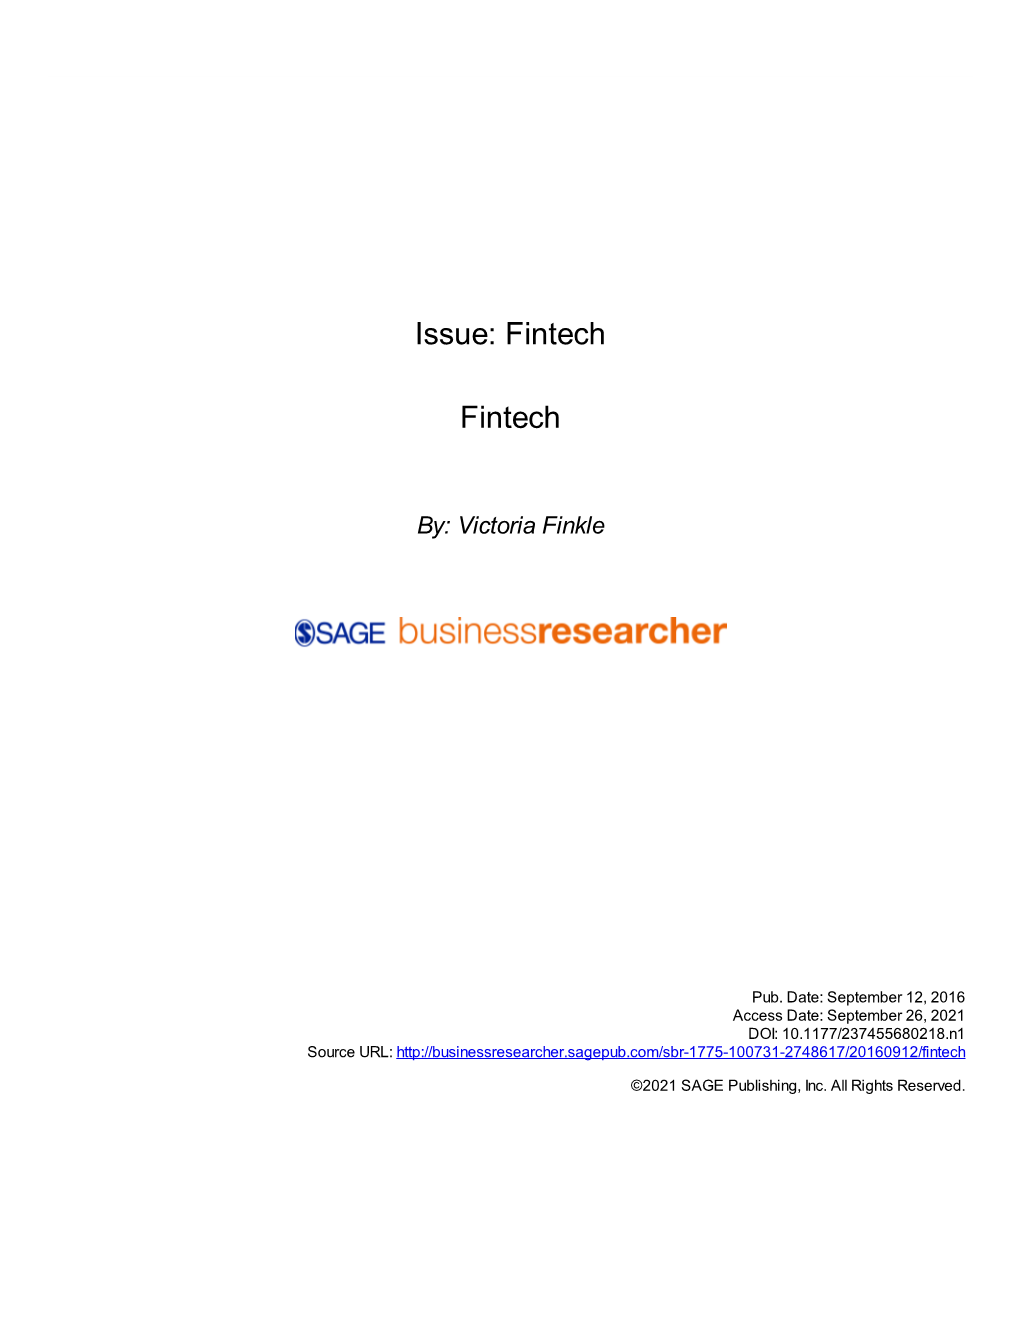 Issue: Fintech Fintech